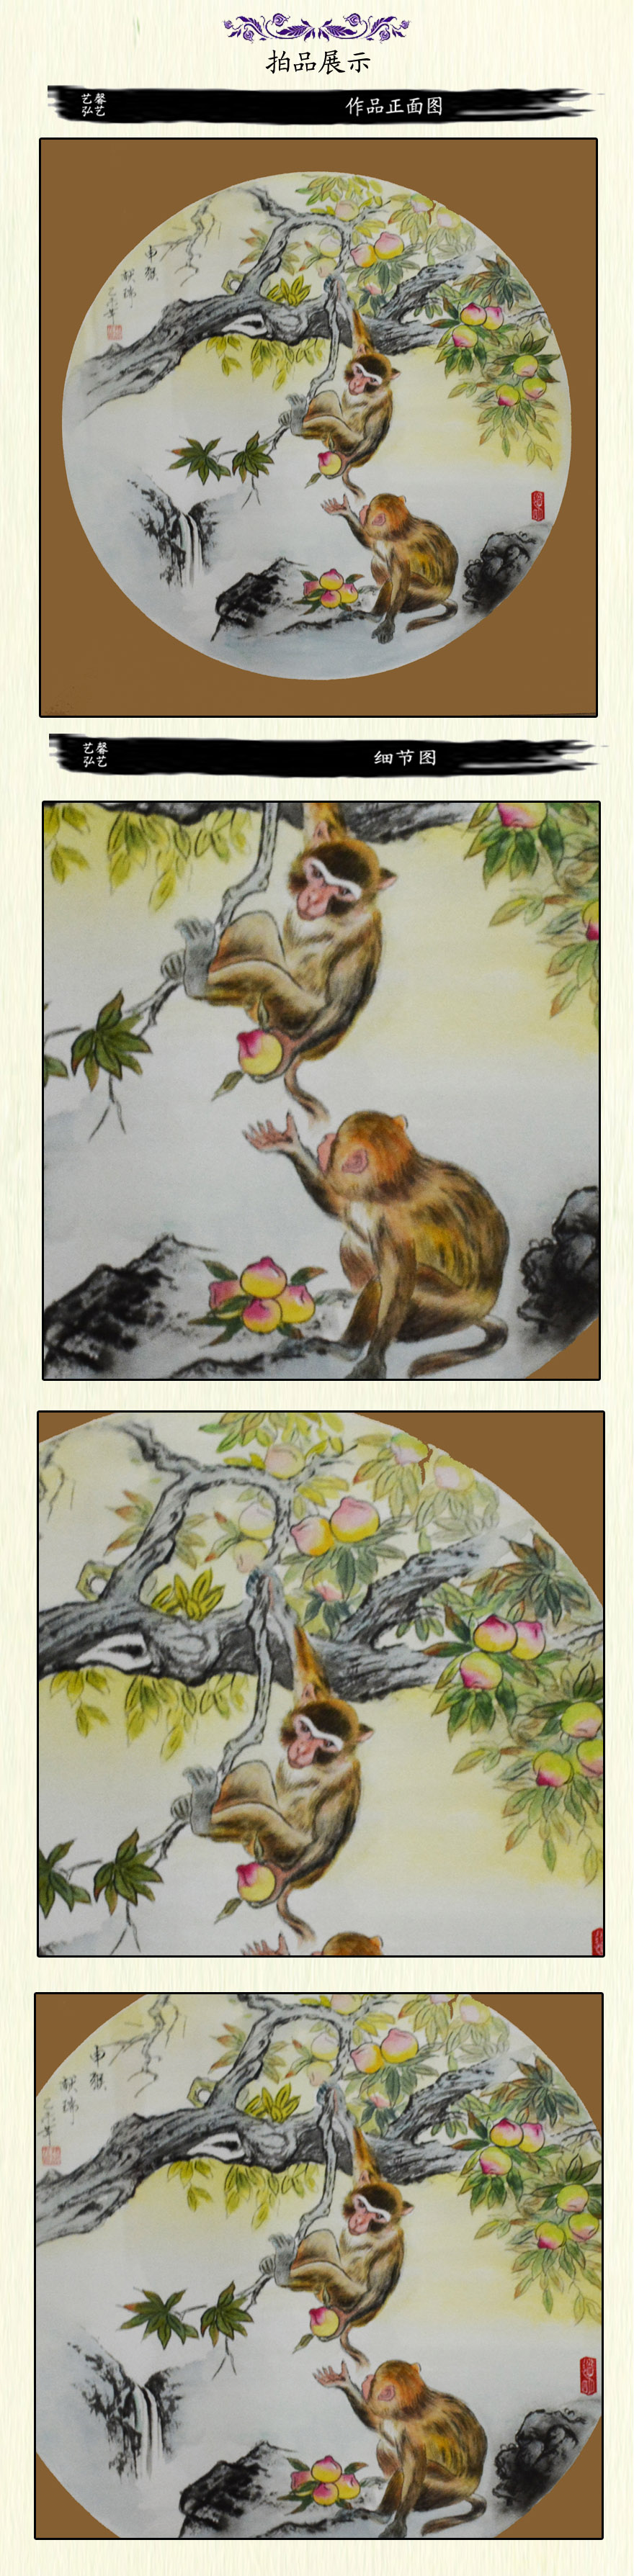 张鸿光工笔《十二生肖之猴》